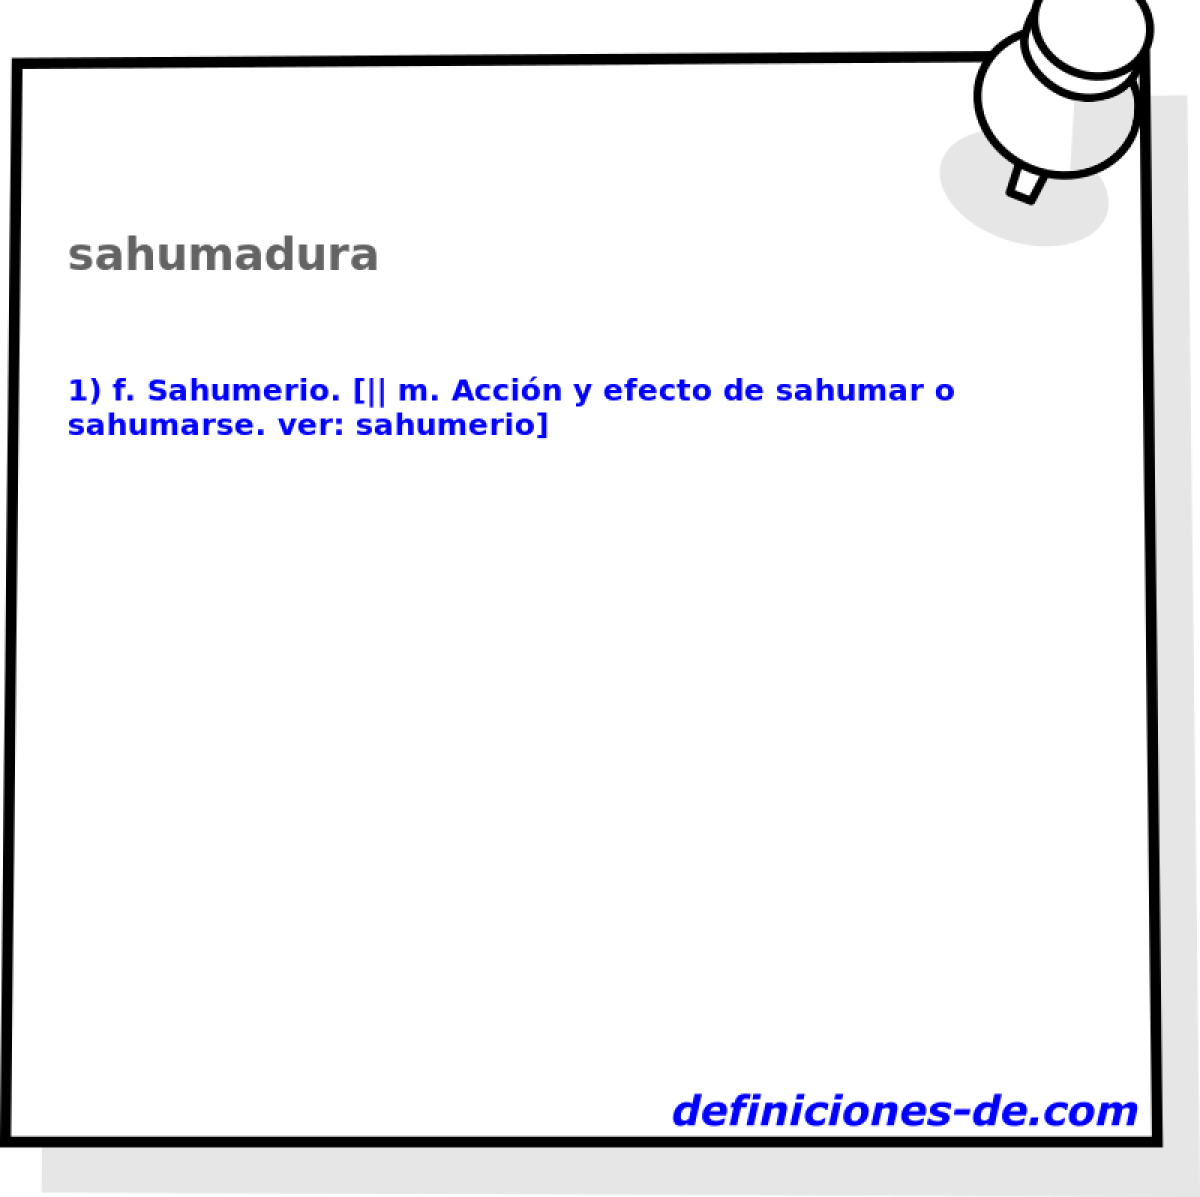 sahumadura 